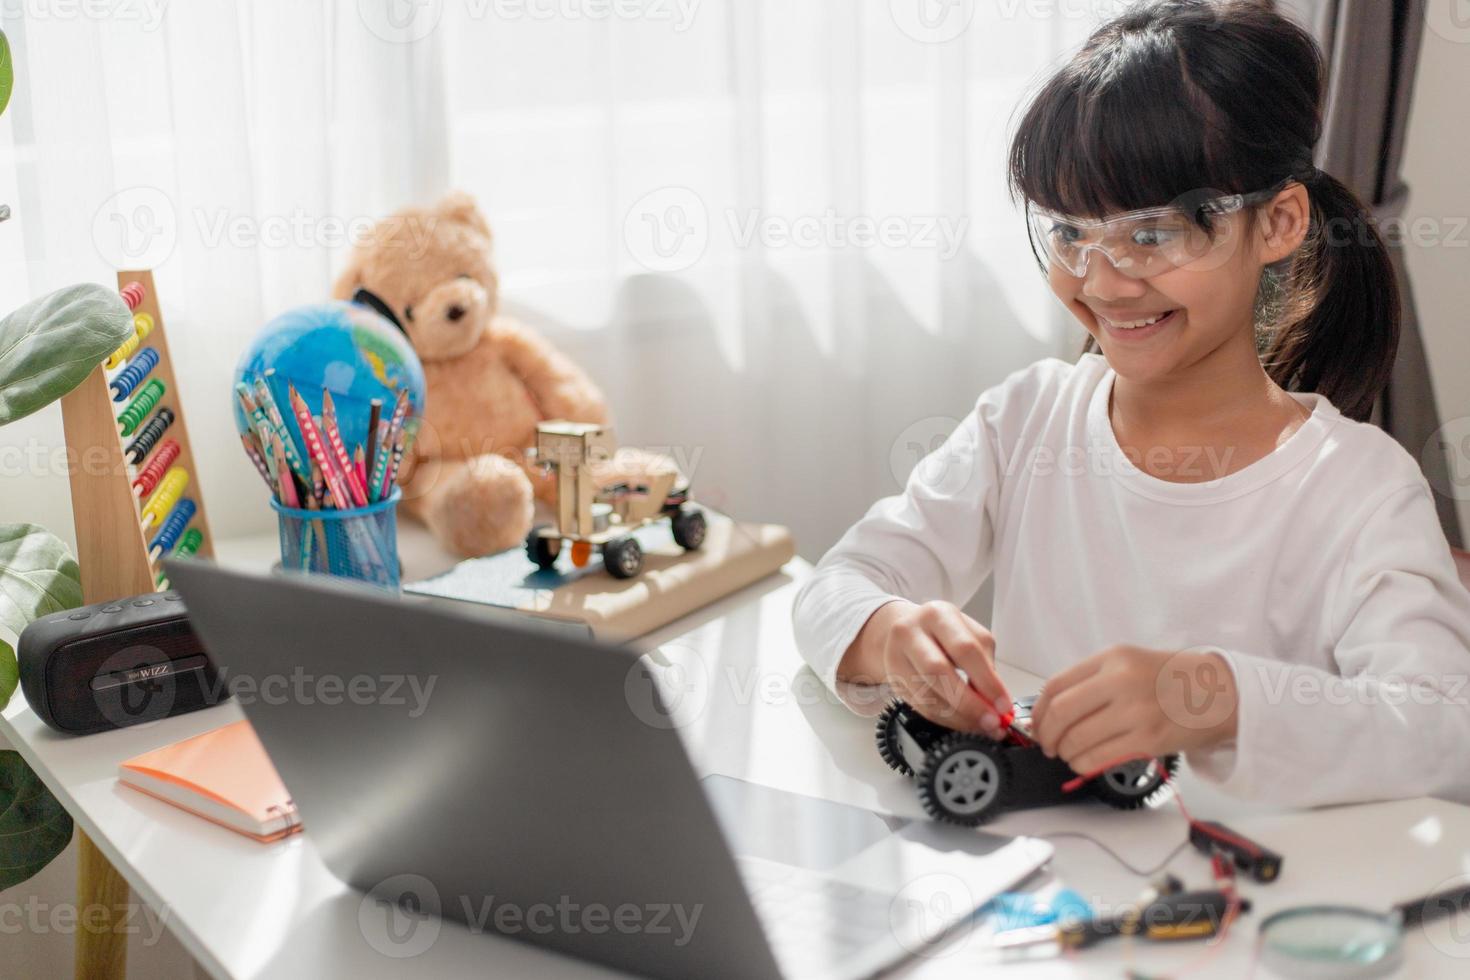 azië studenten leren thuis in het coderen van robotauto's en elektronische bordkabels in stam, stoom, wiskunde engineering wetenschap technologie computercode in robotica voor kinderen concept. foto